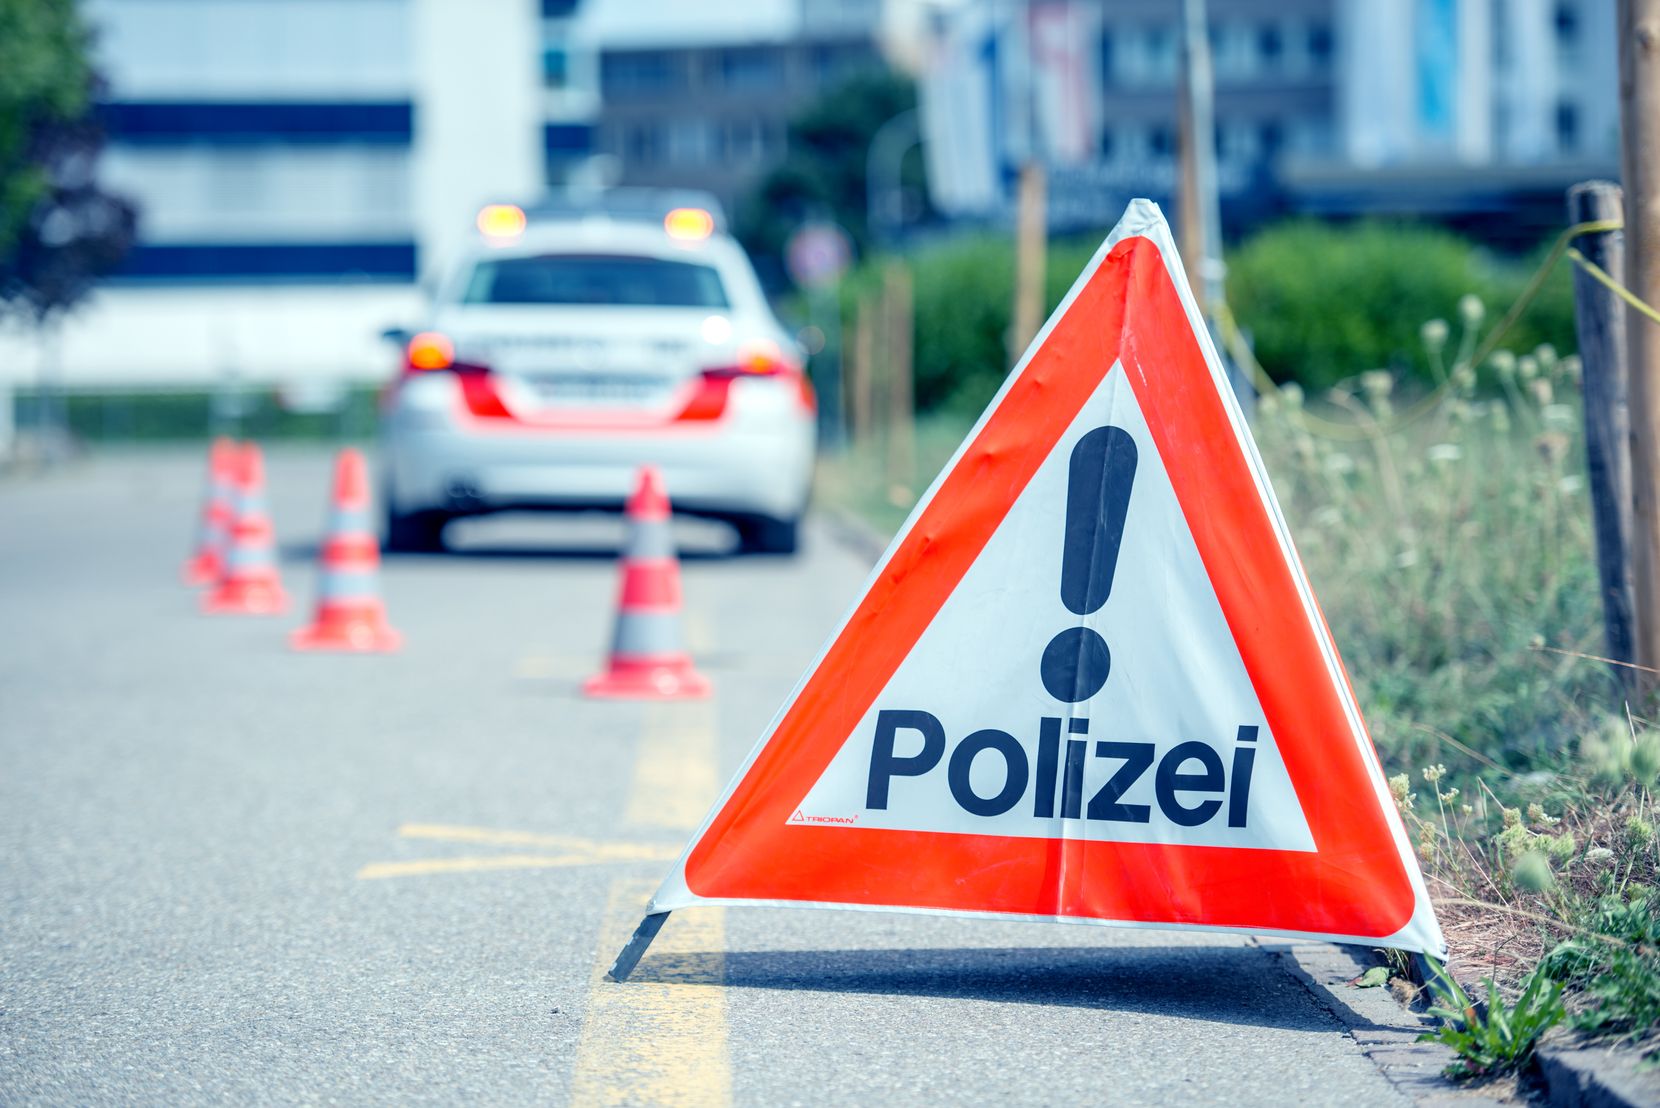 Triopan, Signal, Dreieck, Kontrolle. Symbolbild Symbol Polizei Kantonspolizei Zürich. Bild darf mit Quellenangabe weiter verwendet werden.